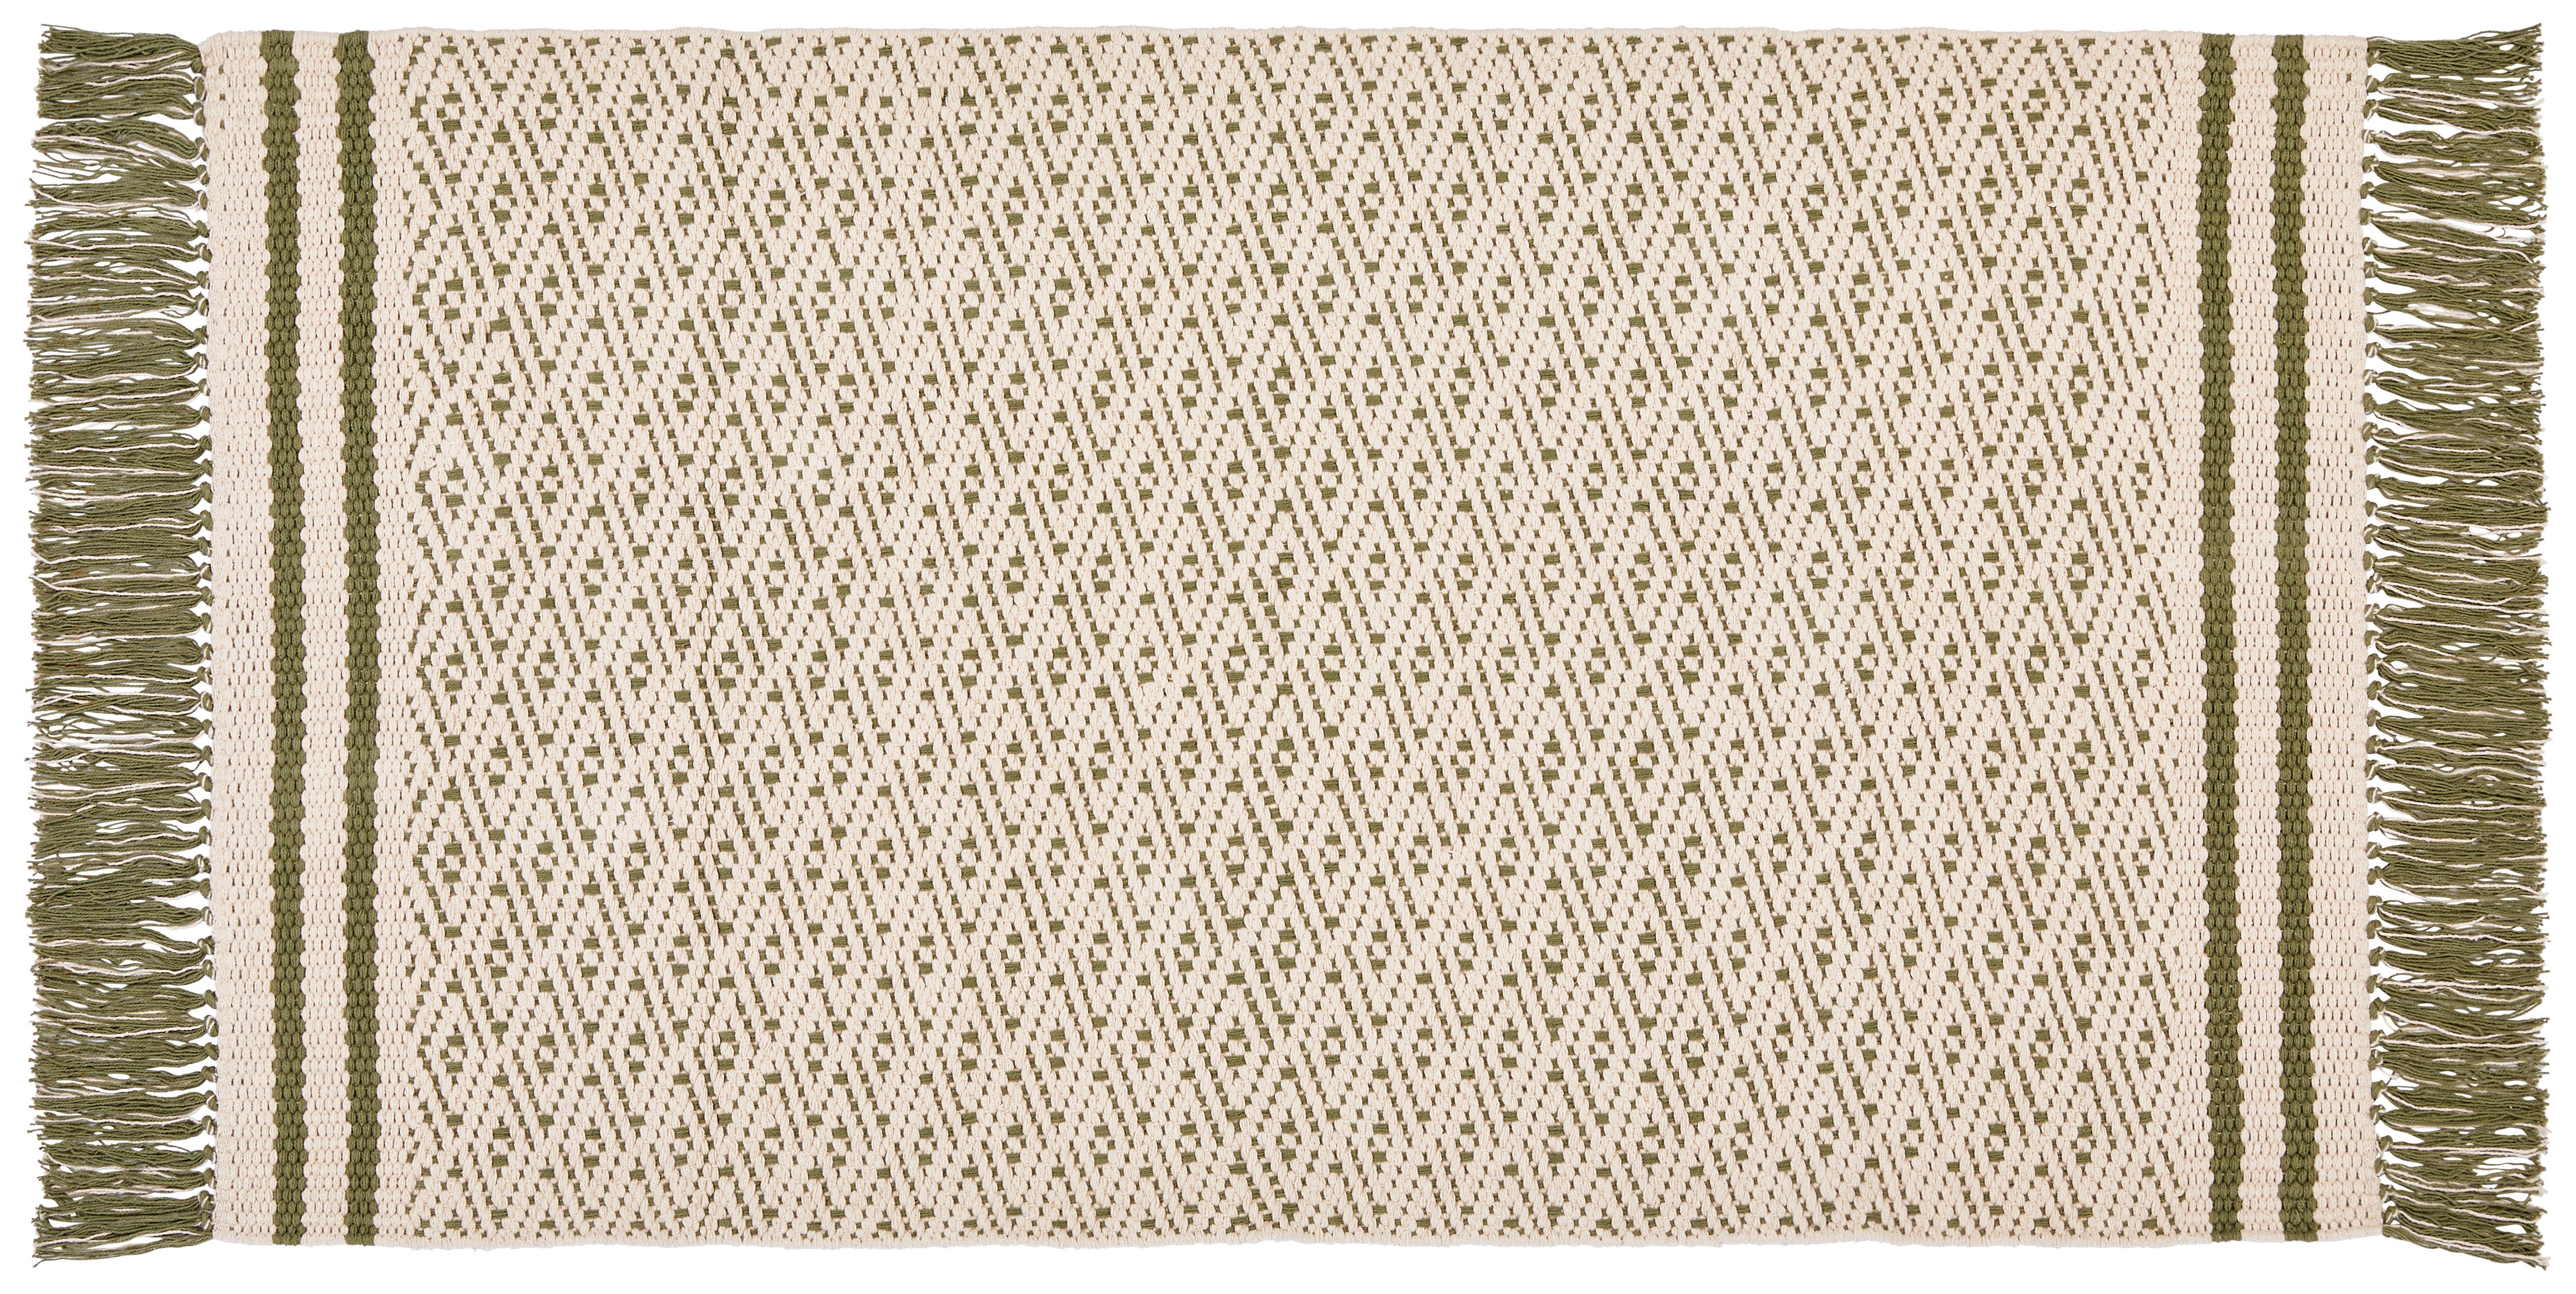 Teppich Vorleger Grün Mit Fransen Iman 70x120 cm - Grün, MODERN, Textil (70/120cm) - Ondega